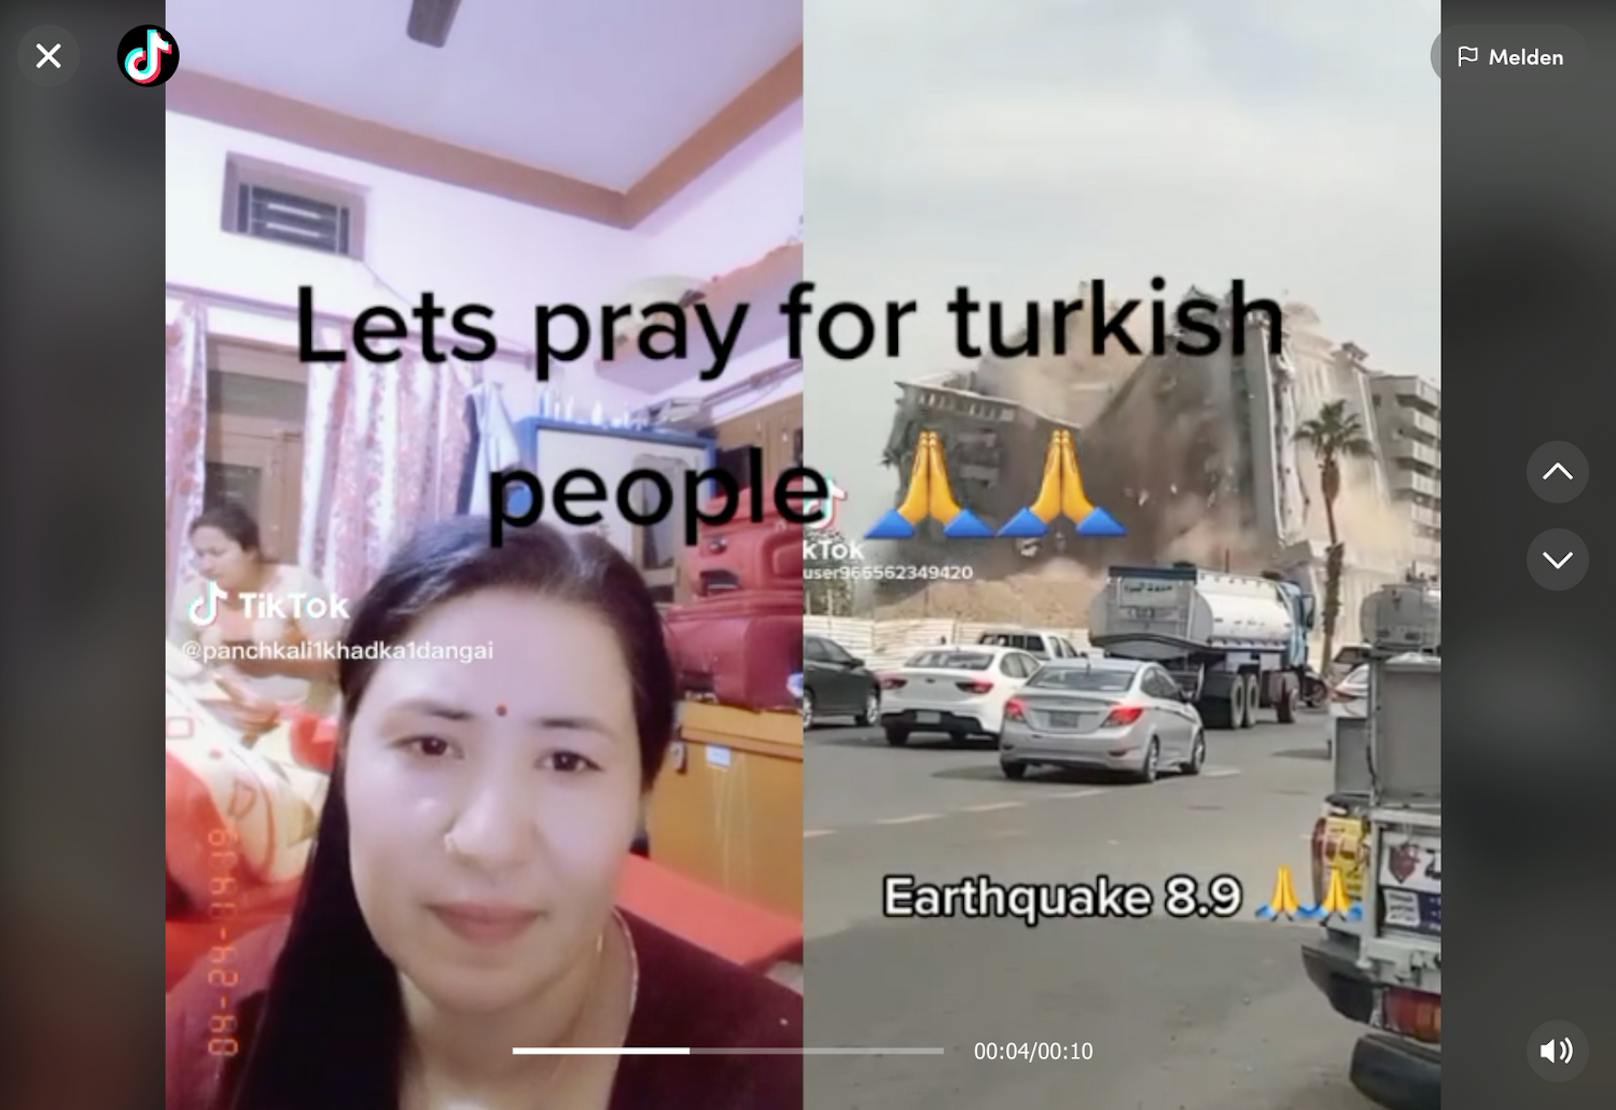 Auch wenn auf verschiedenen Social-Media-Kanälen, ein Zusammenhang zwischen den Erdbeben in der Türkei und dem einstürzenden Gebäude auf der rechten Seite hergestellt wird: Es gibt keinen. Der Einsturz ereignete sich in Dschidda in Saudiarabien, und zwar vor dem 6. Februar 2023.